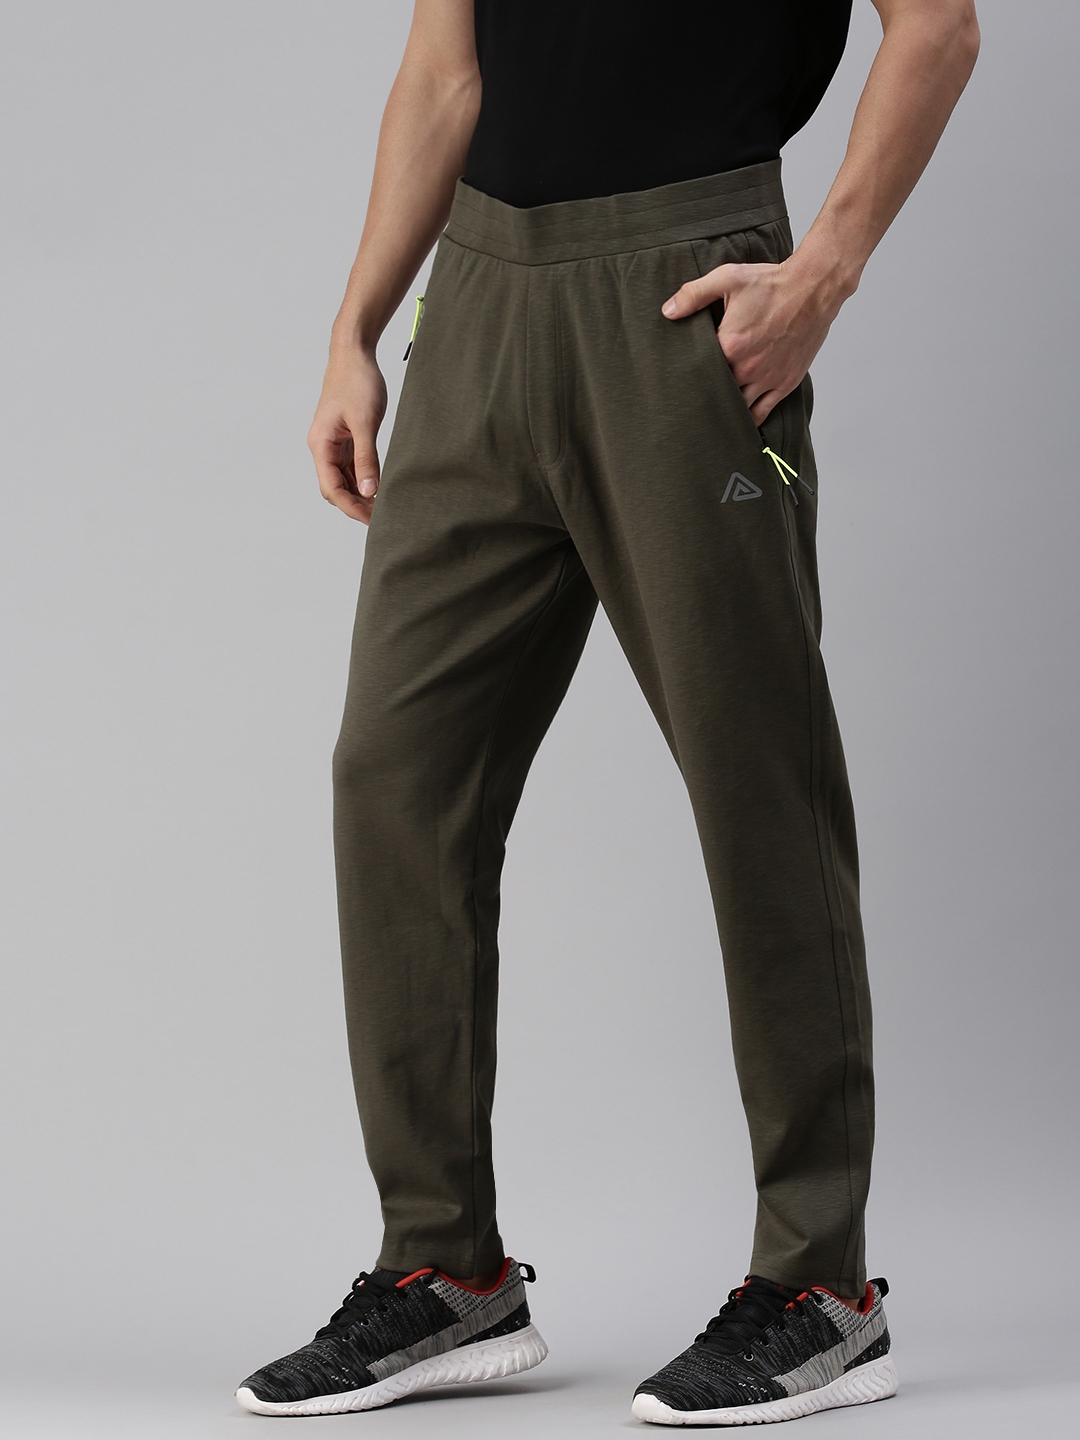 Showoff | SHOWOFF Men's Solid Cotton Olive Regular Fit Track Pant 1